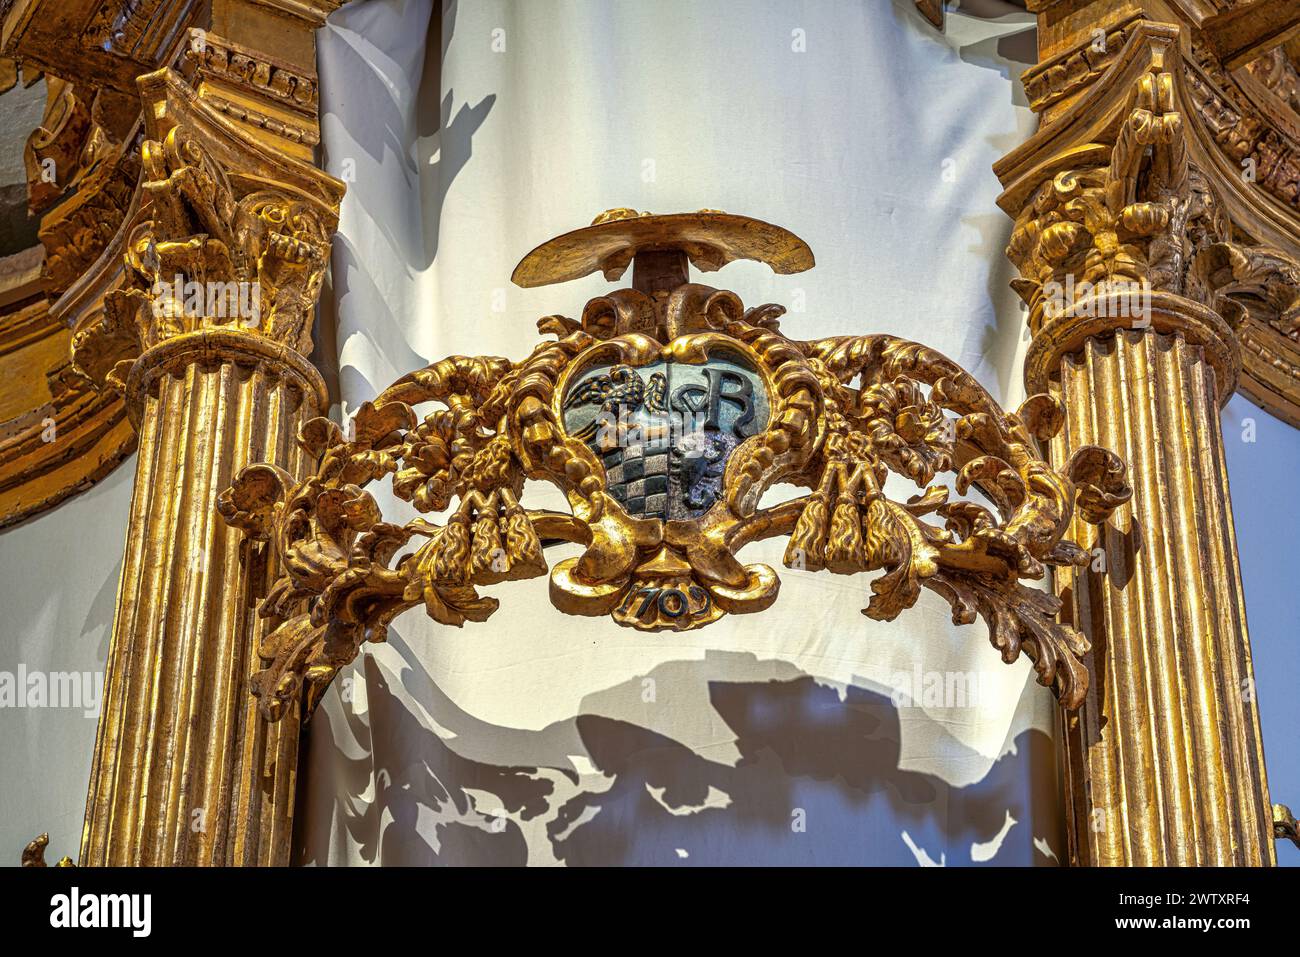 Detalle del órgano histórico, destruido y reconstruido después del terremoto de 2009, en la Basílica de Santa Maria di Collemaggio. L'Aquila, Abruzos, Italia Foto de stock